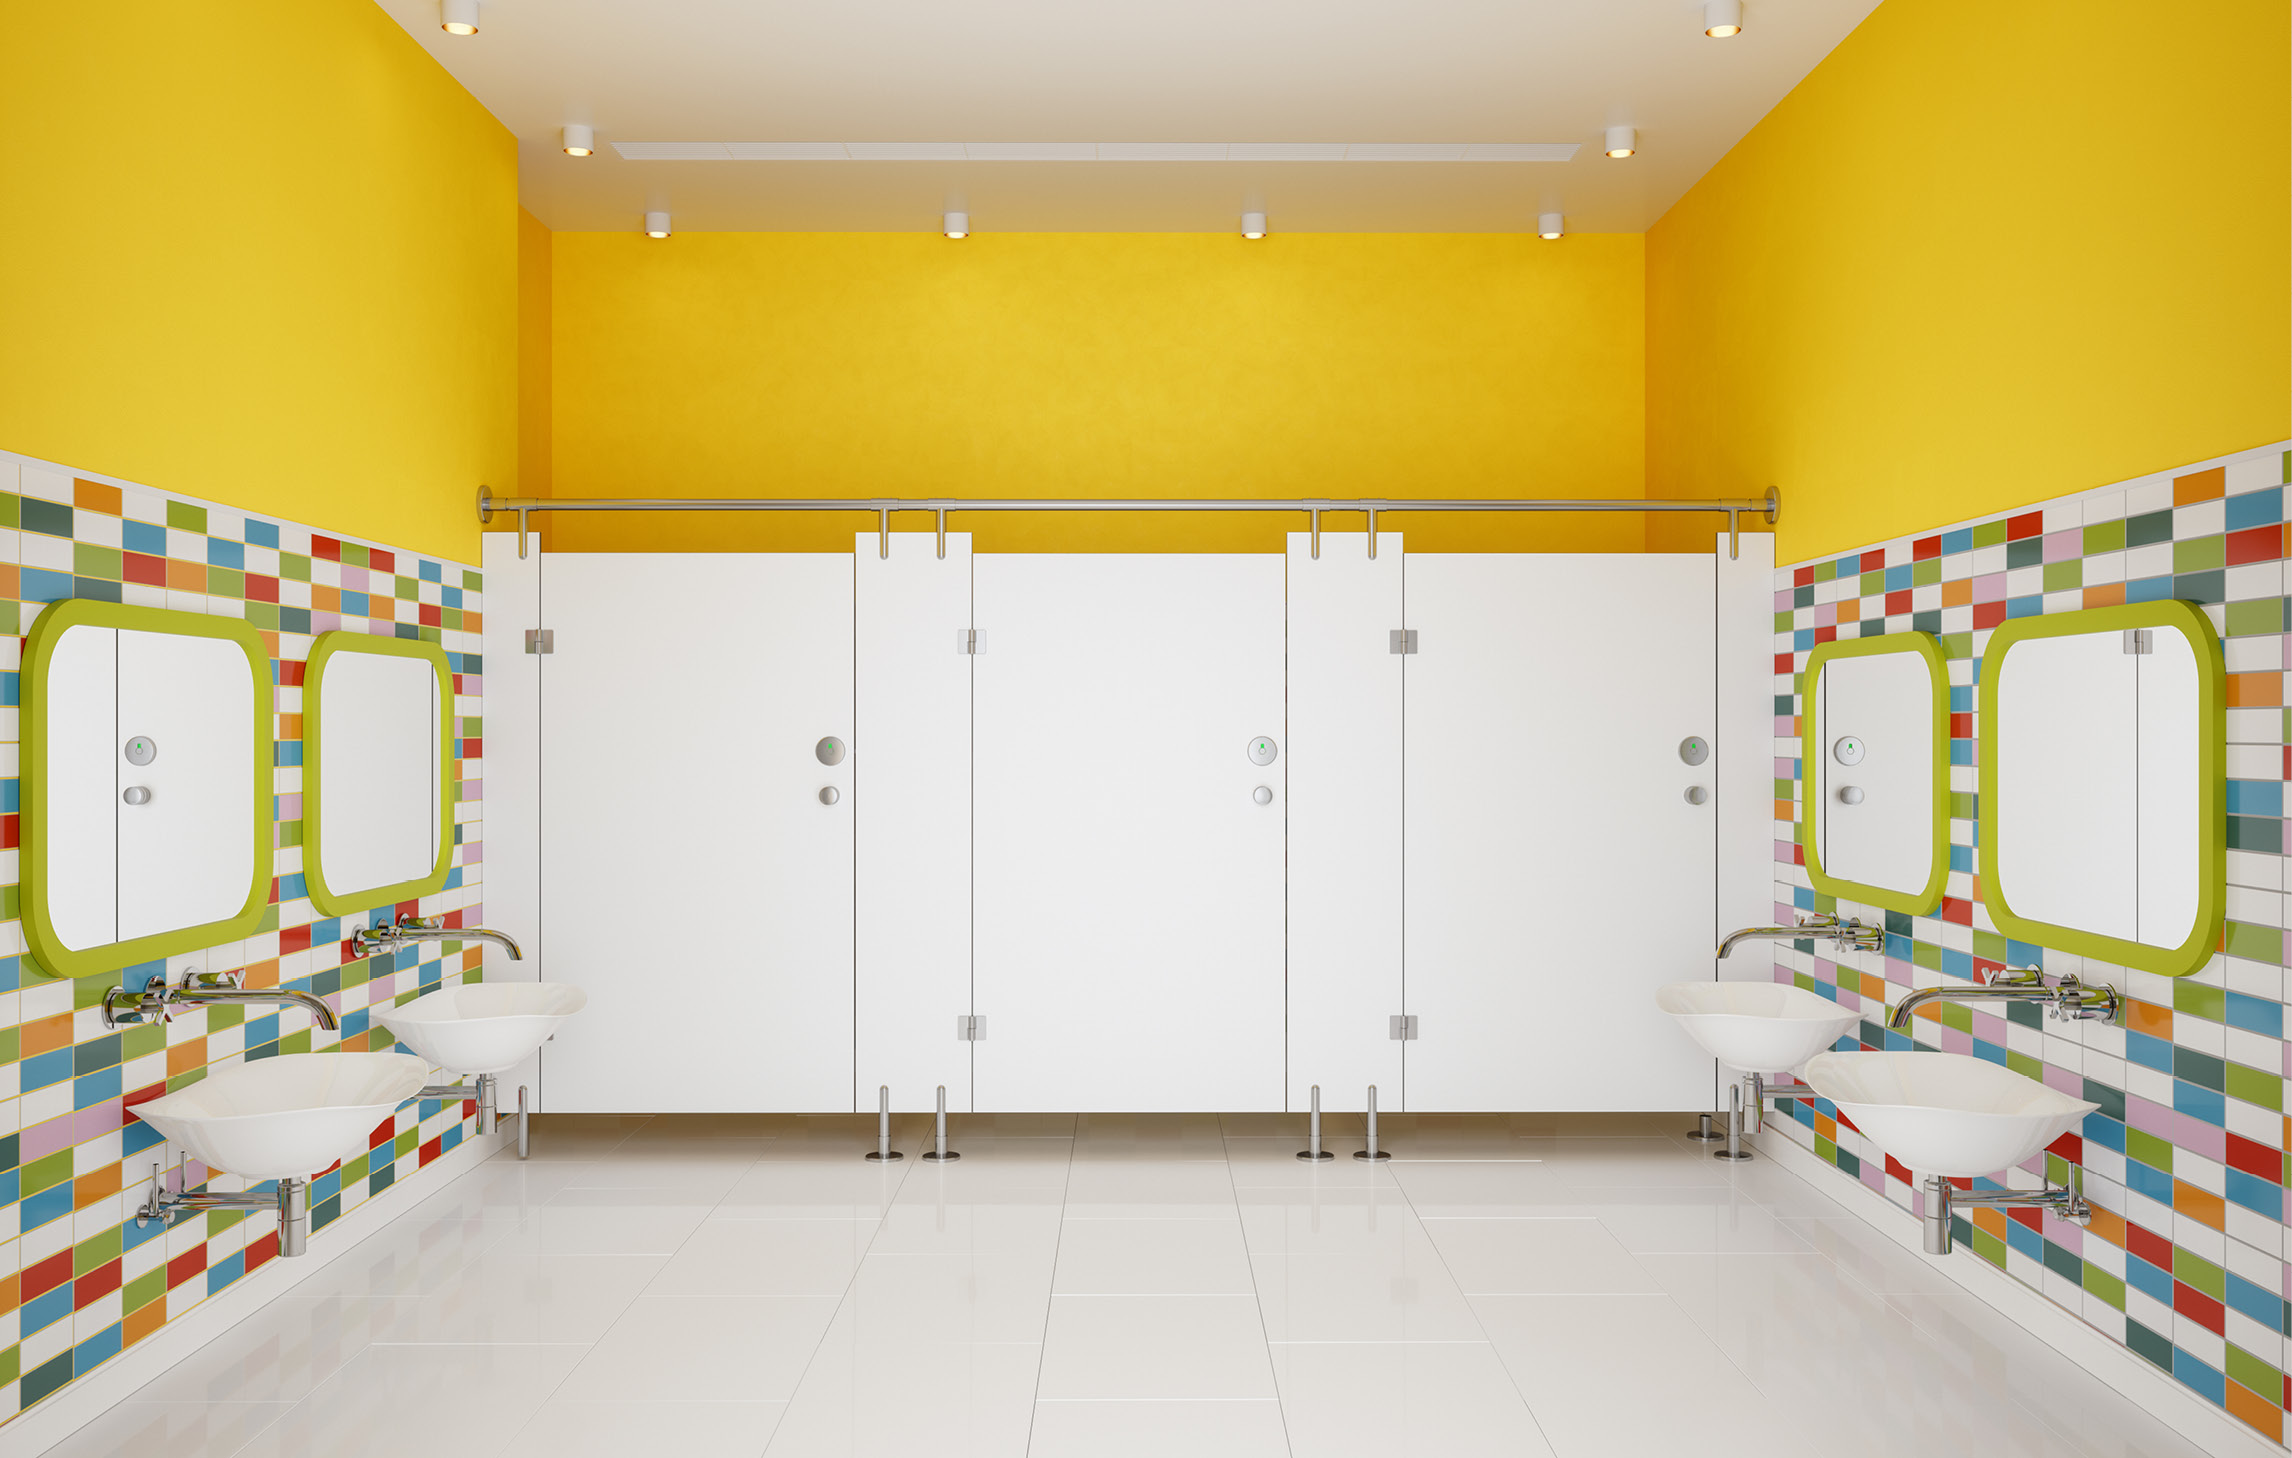 Foto eines Waschraums für Kinder mit bunten Kacheln und gelben Wänden